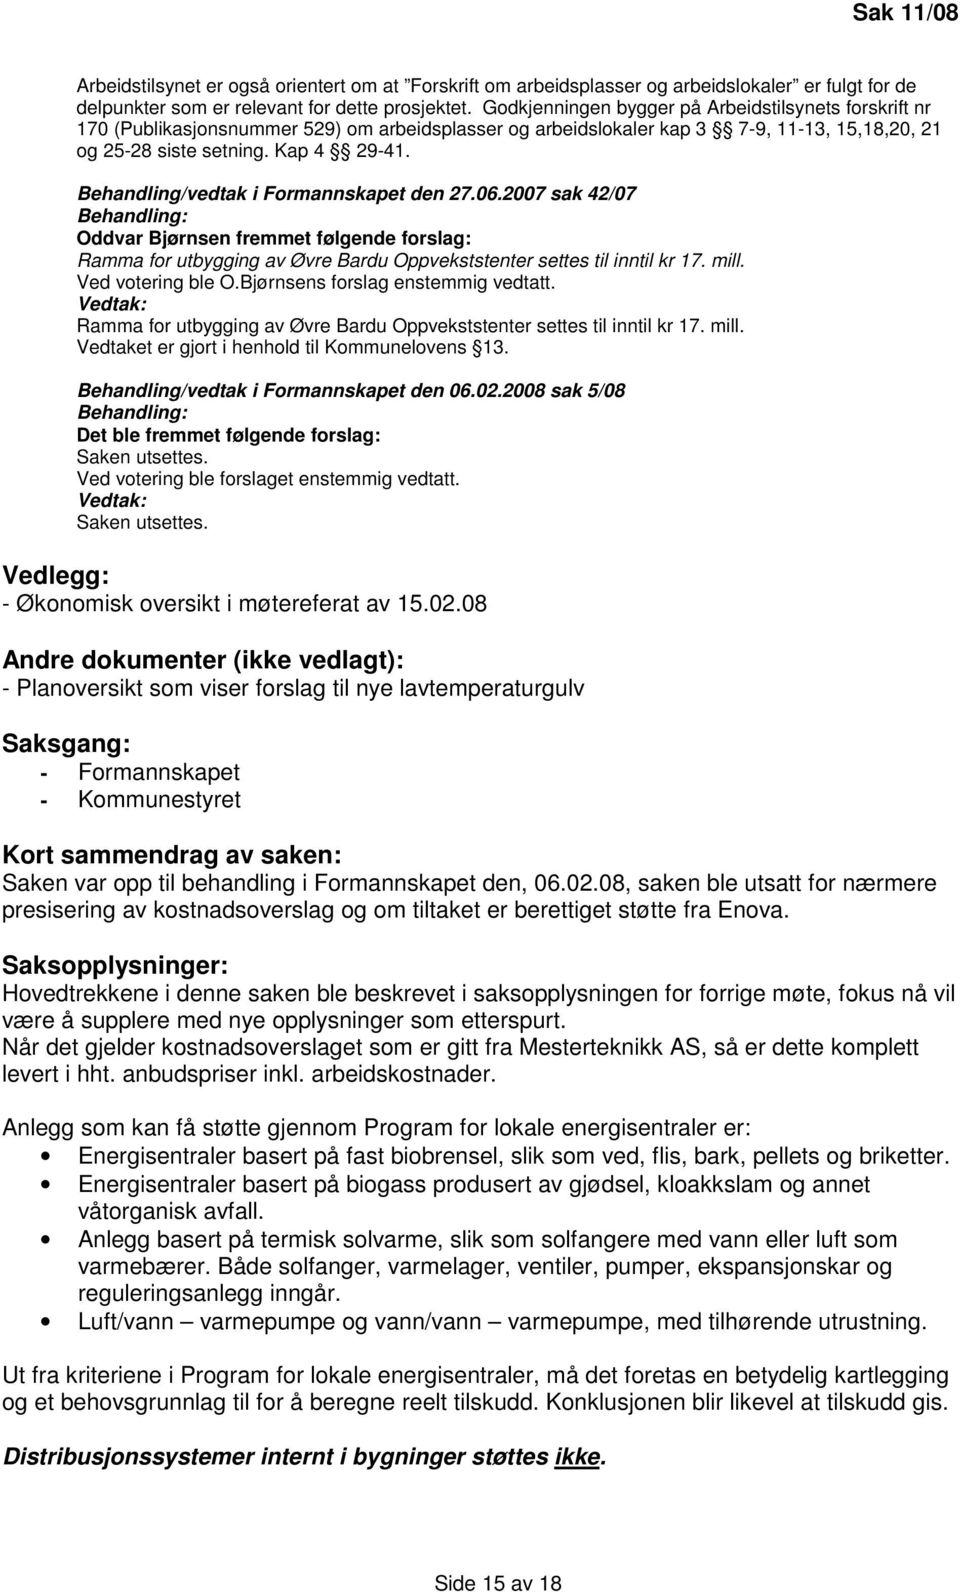 Behandling/vedtak i Formannskapet den 27.06.2007 sak 42/07 Oddvar Bjørnsen fremmet følgende forslag: Ramma for utbygging av Øvre Bardu Oppvekststenter settes til inntil kr 17. mill.